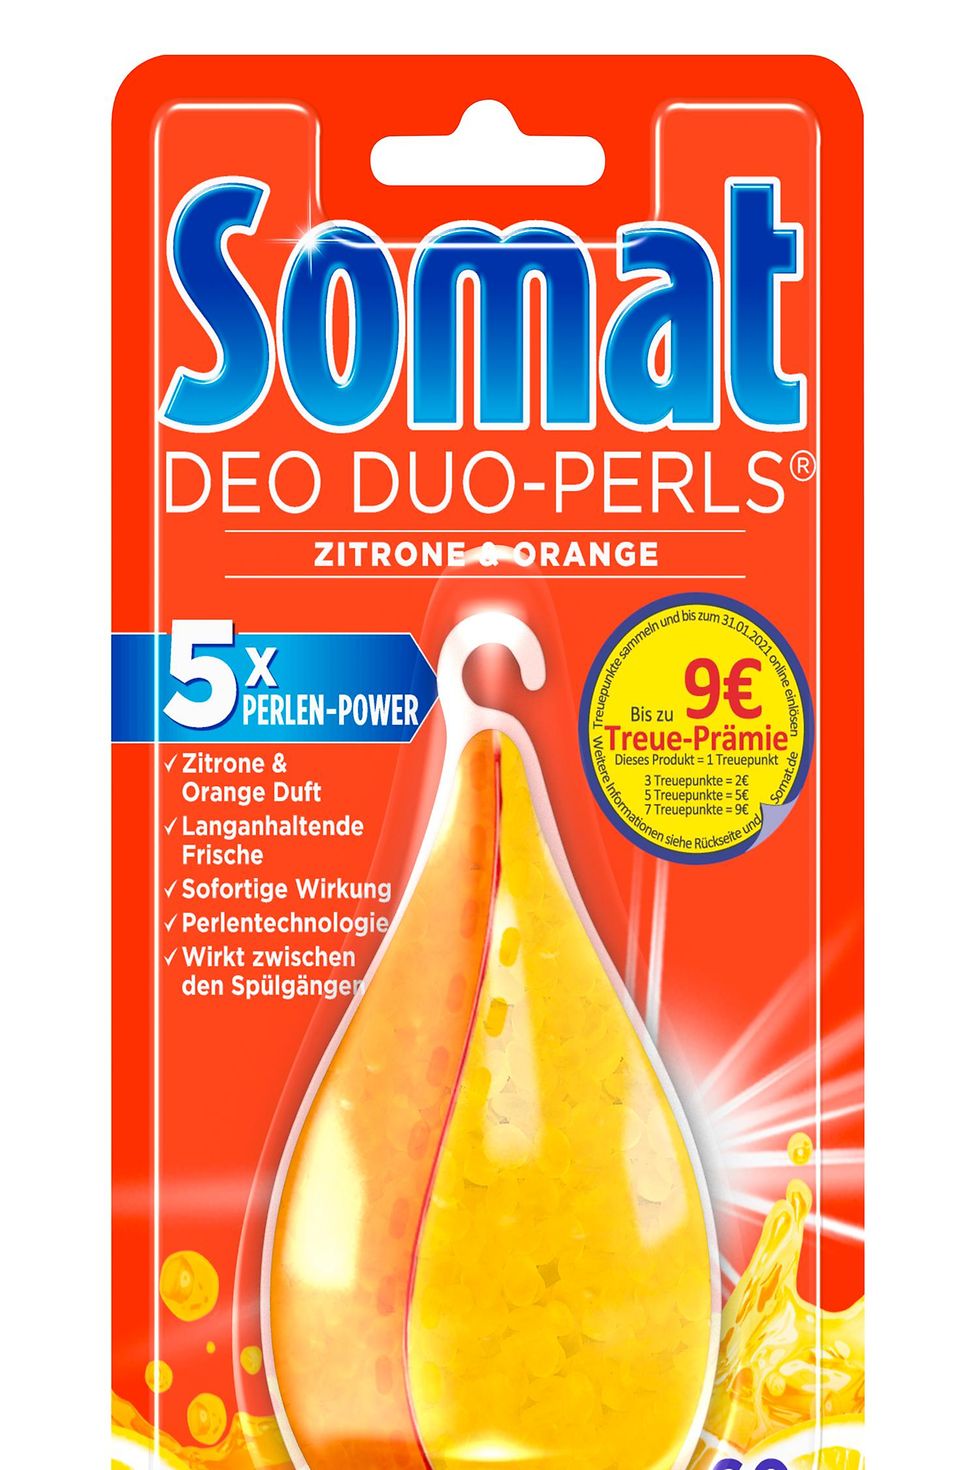 Somat Deo Duo-Perls Zitrone-Orange